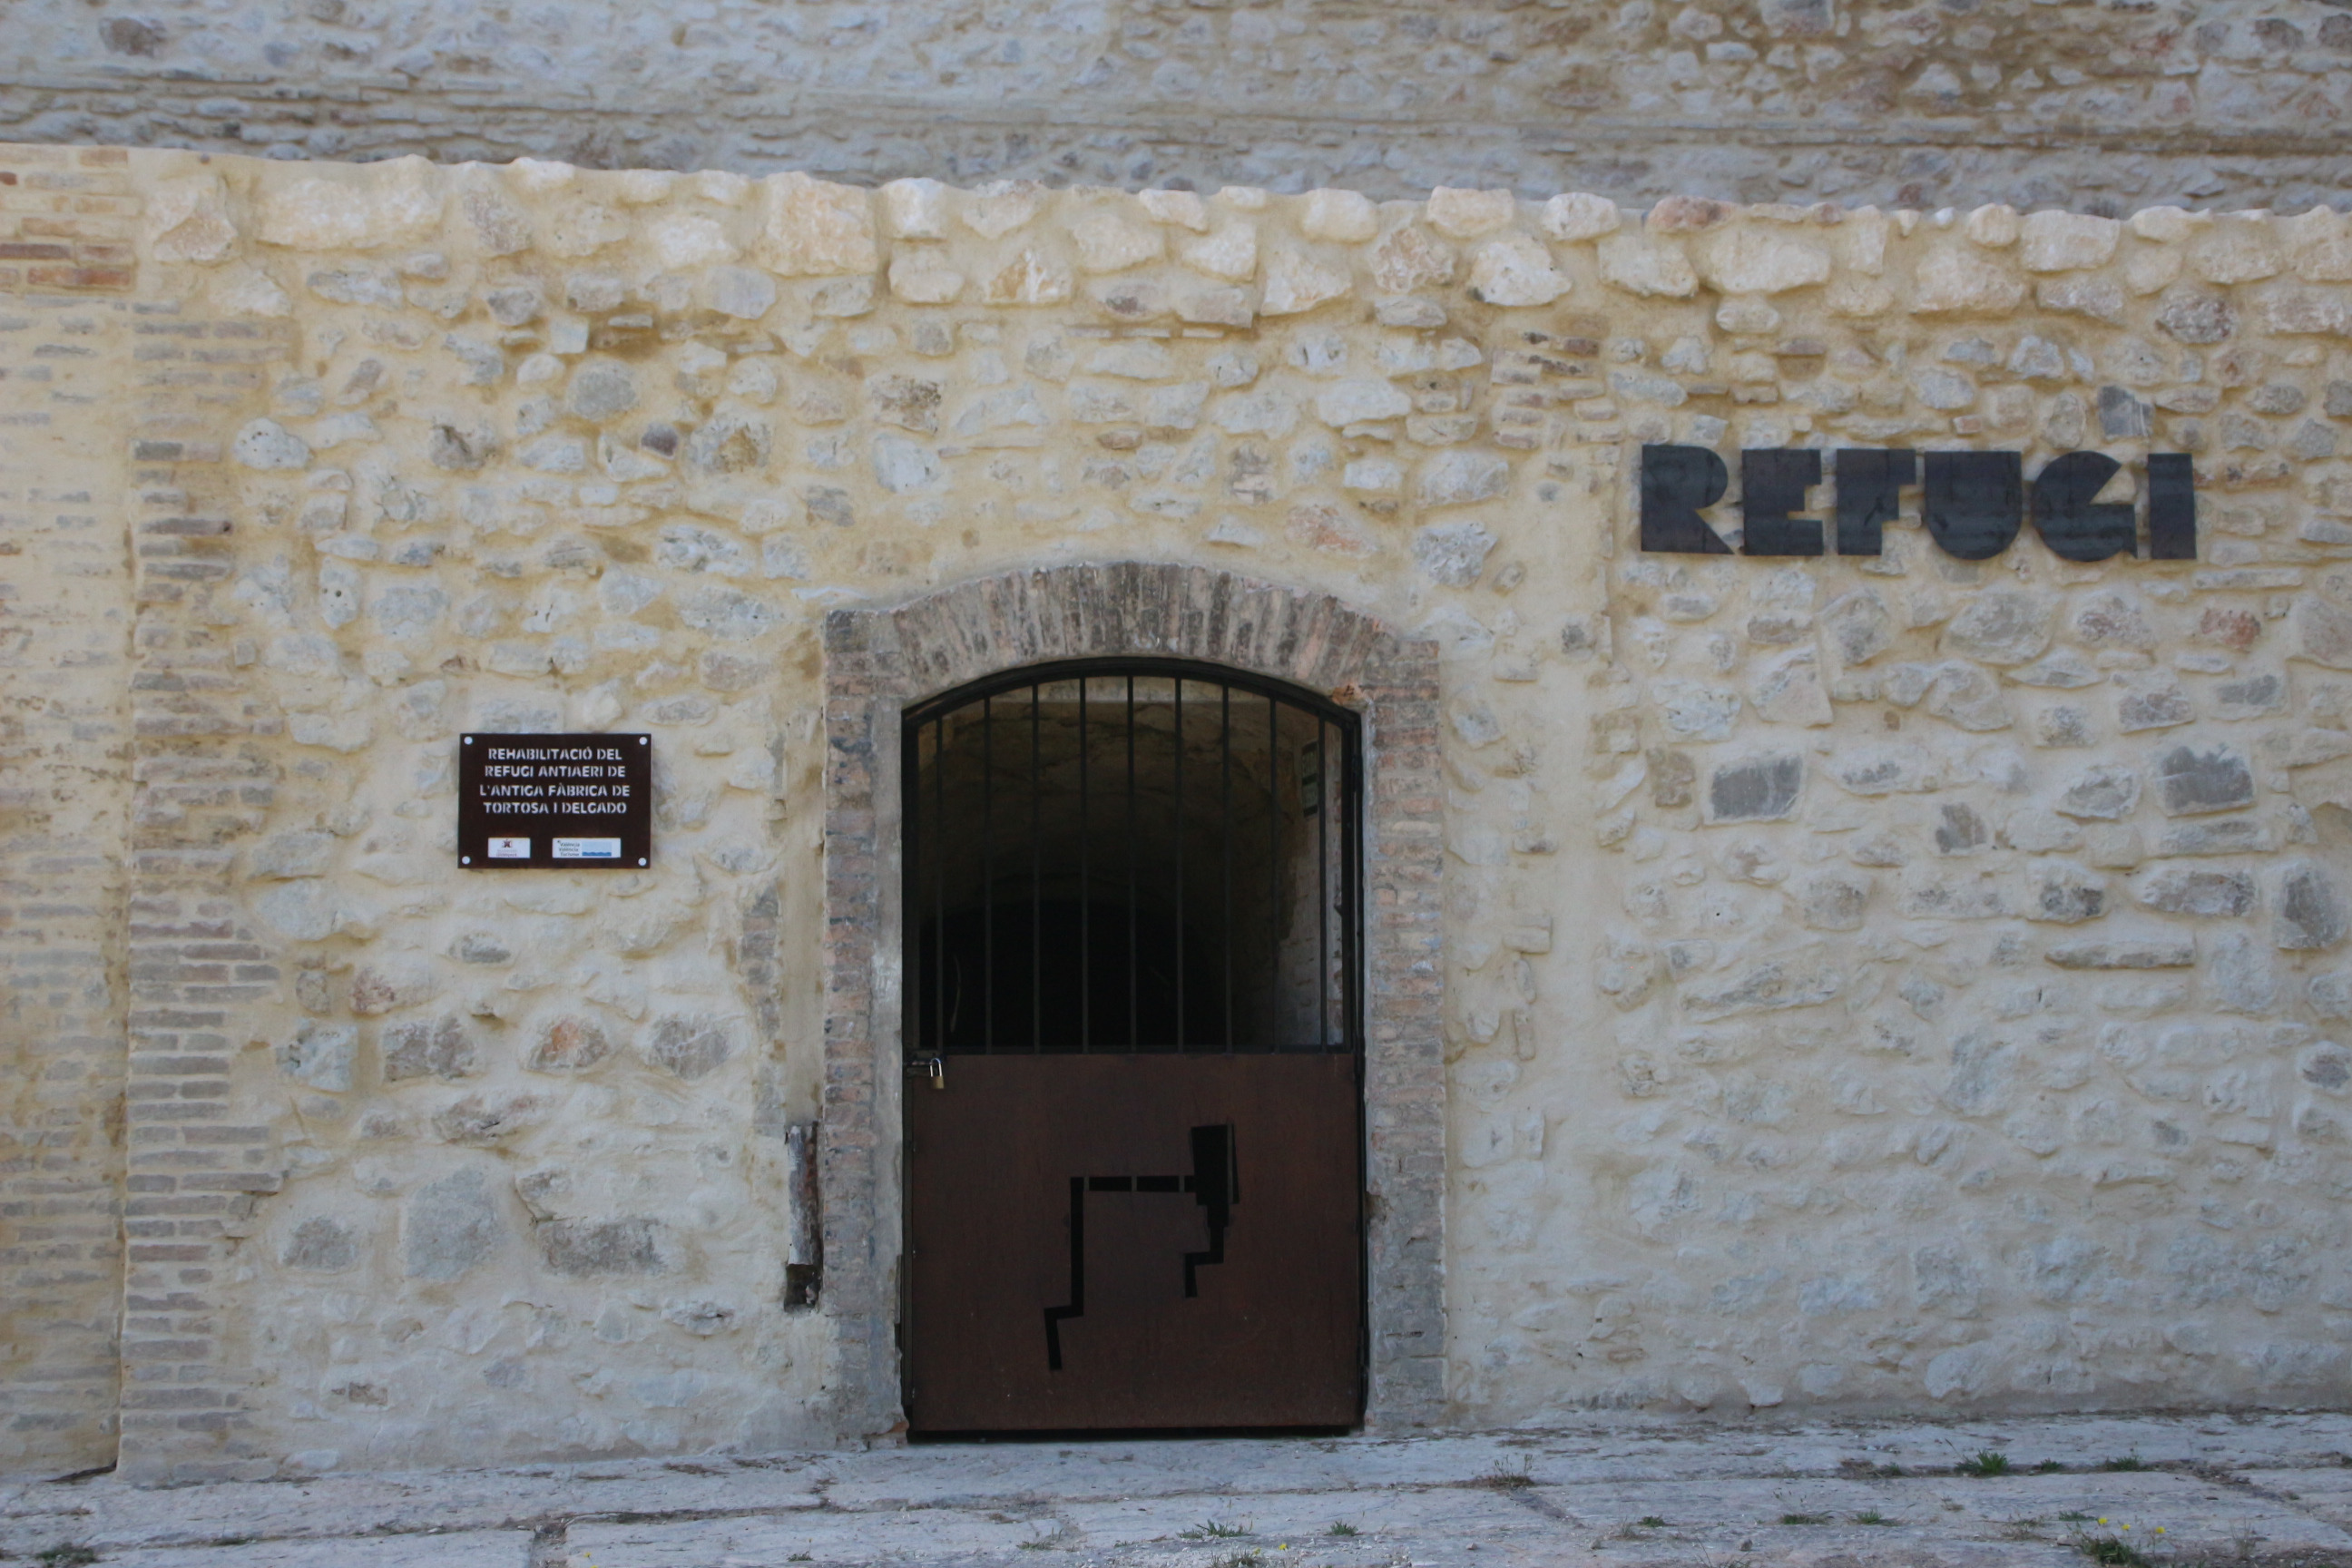 Refugio de Tortosa y Delgado. Ontinyent